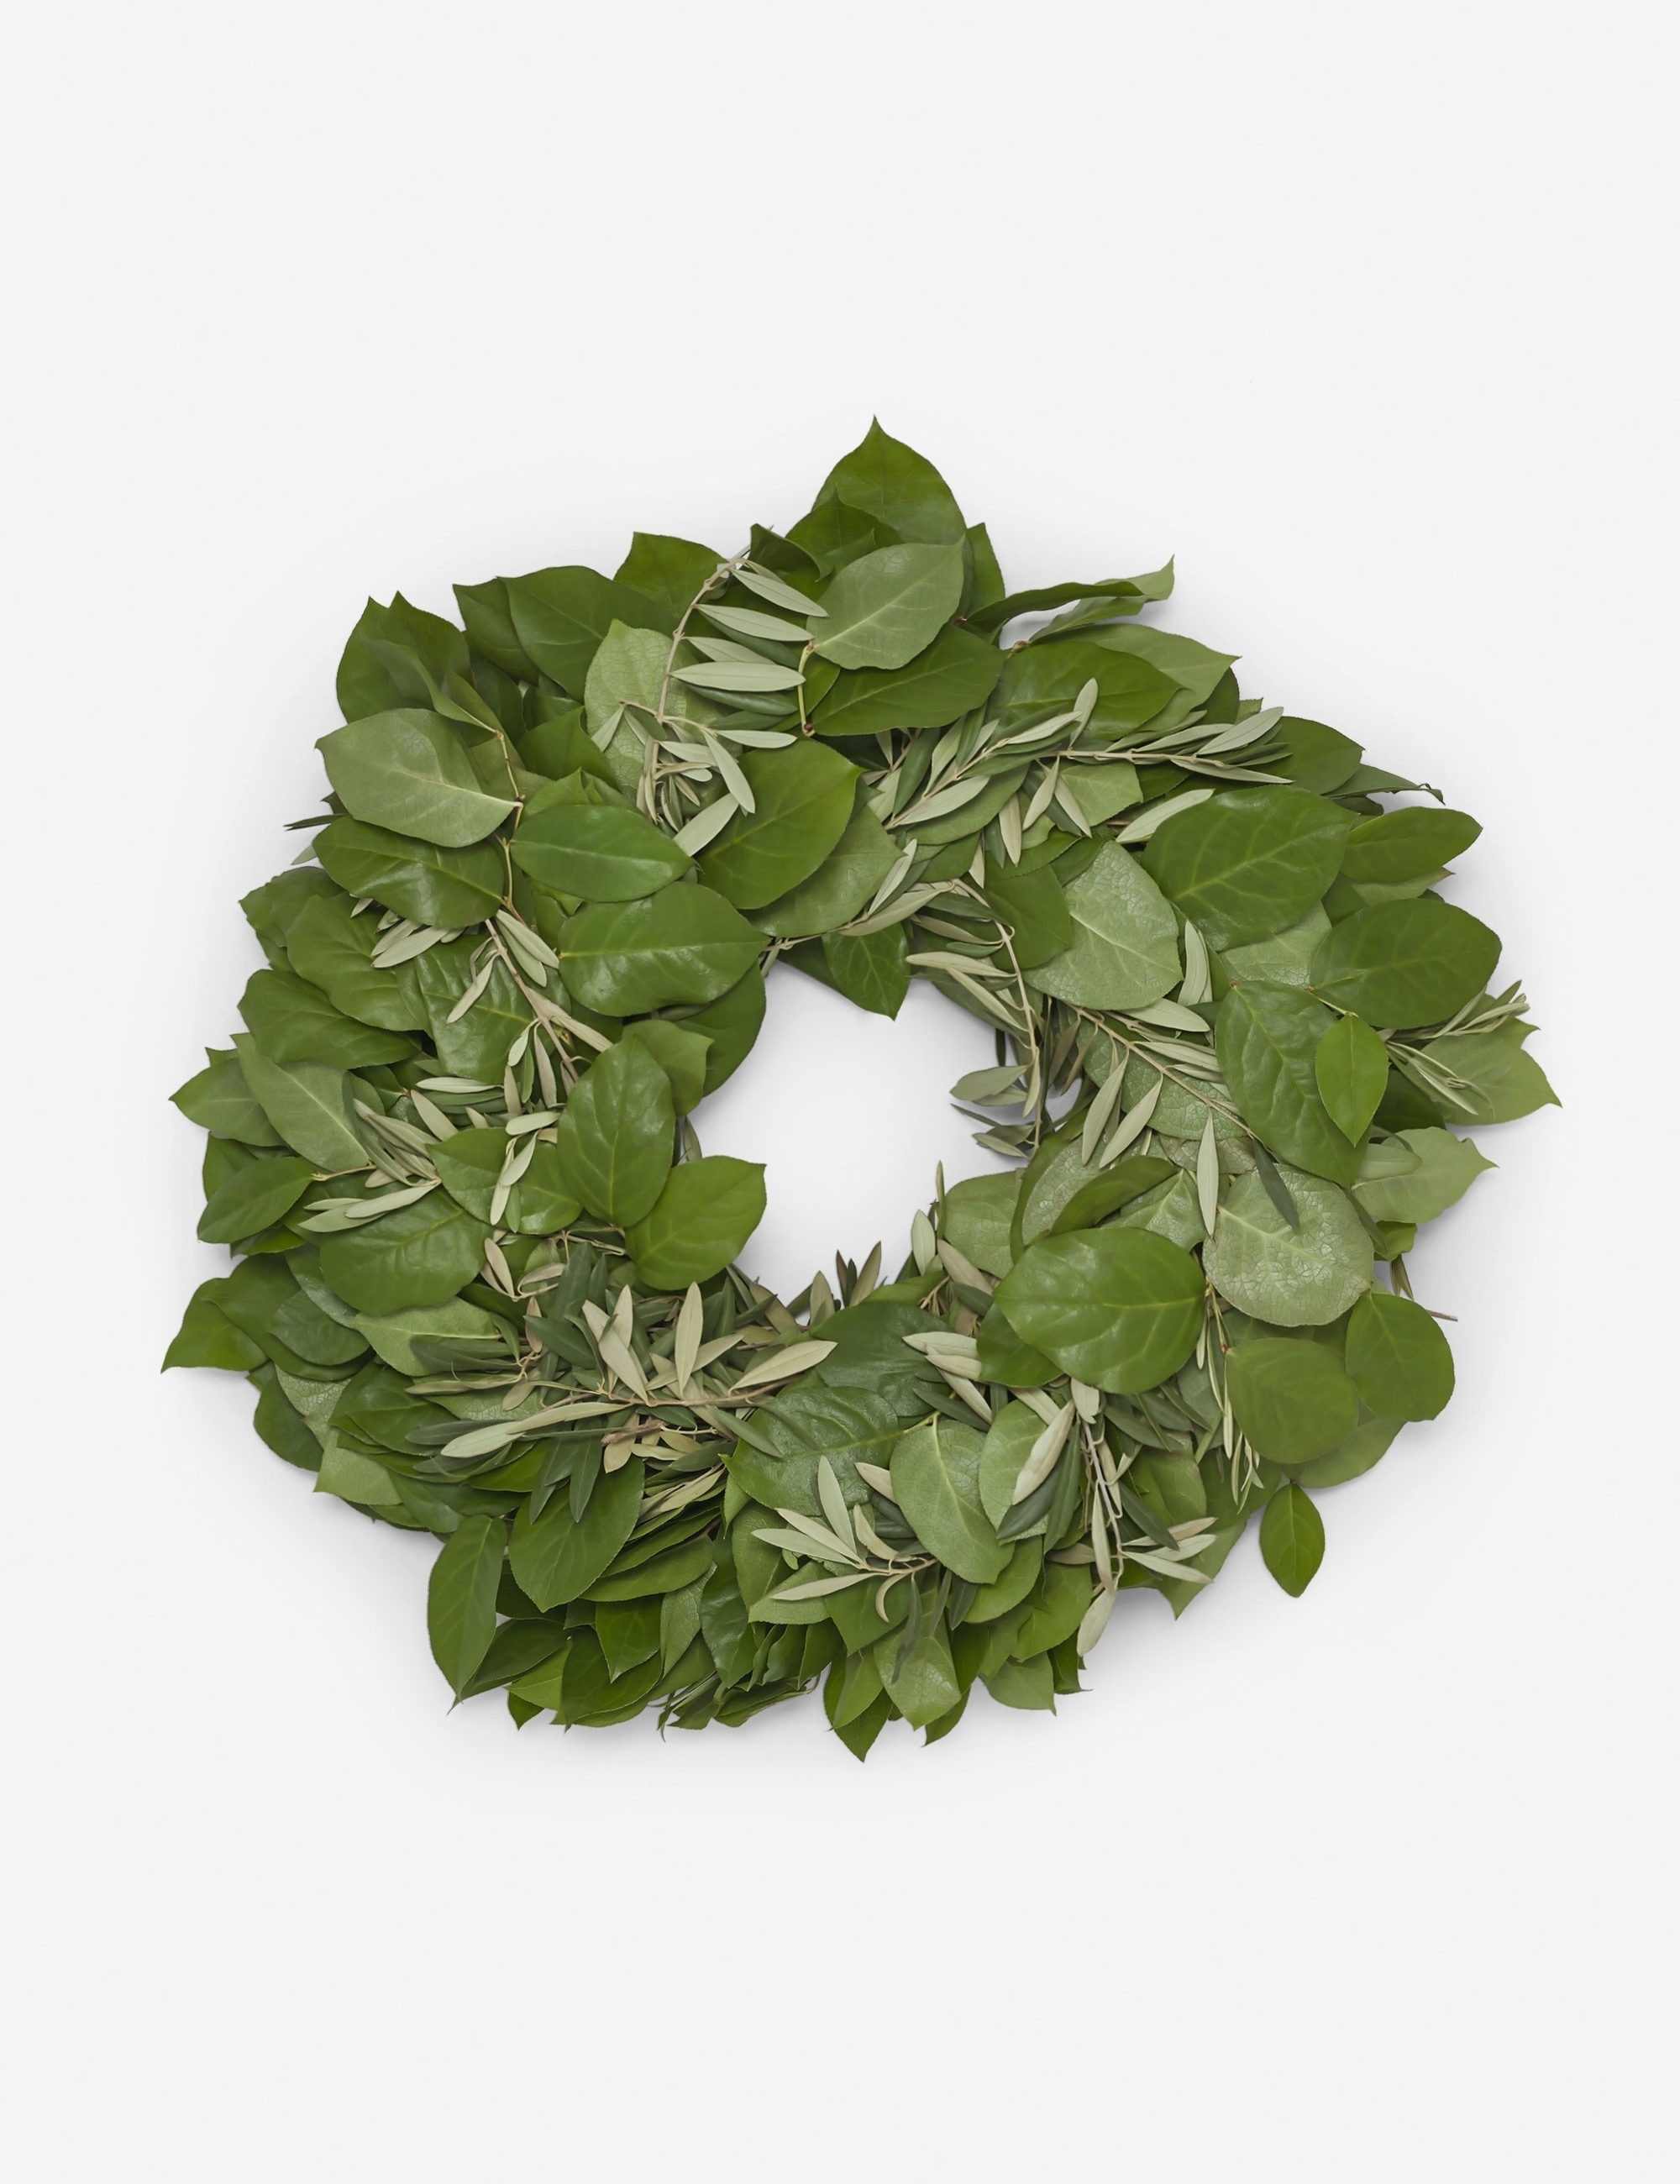 Olive Lemon Leaf Wreath 12"Dia - Image 0